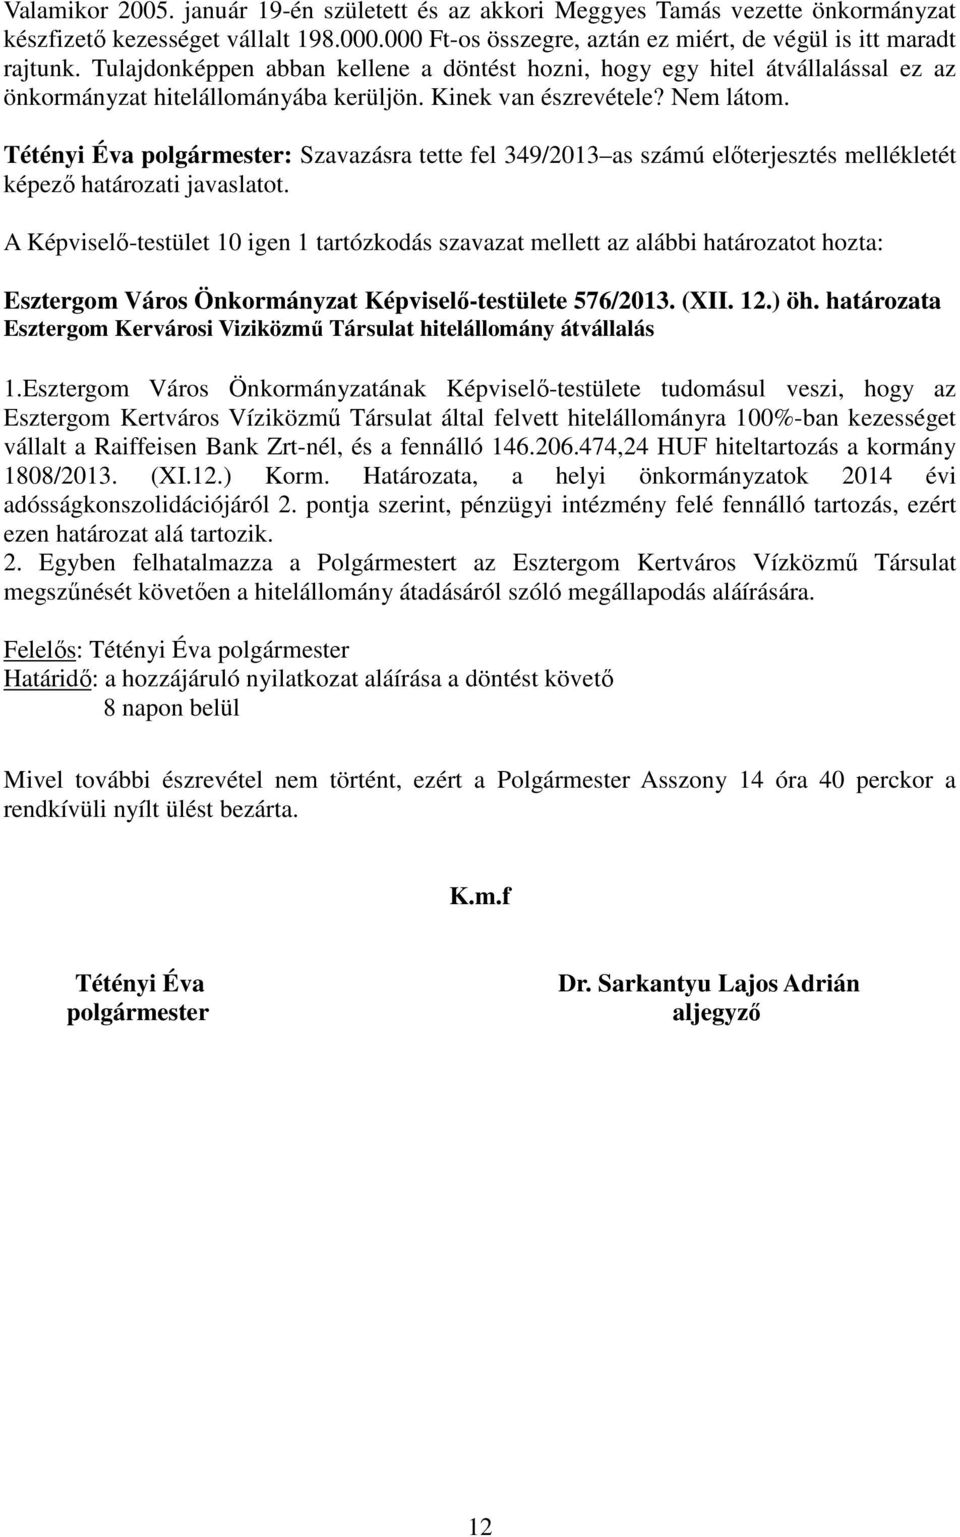 Tétényi Éva polgármester: Szavazásra tette fel 349/2013 as számú elıterjesztés mellékletét képezı határozati javaslatot.